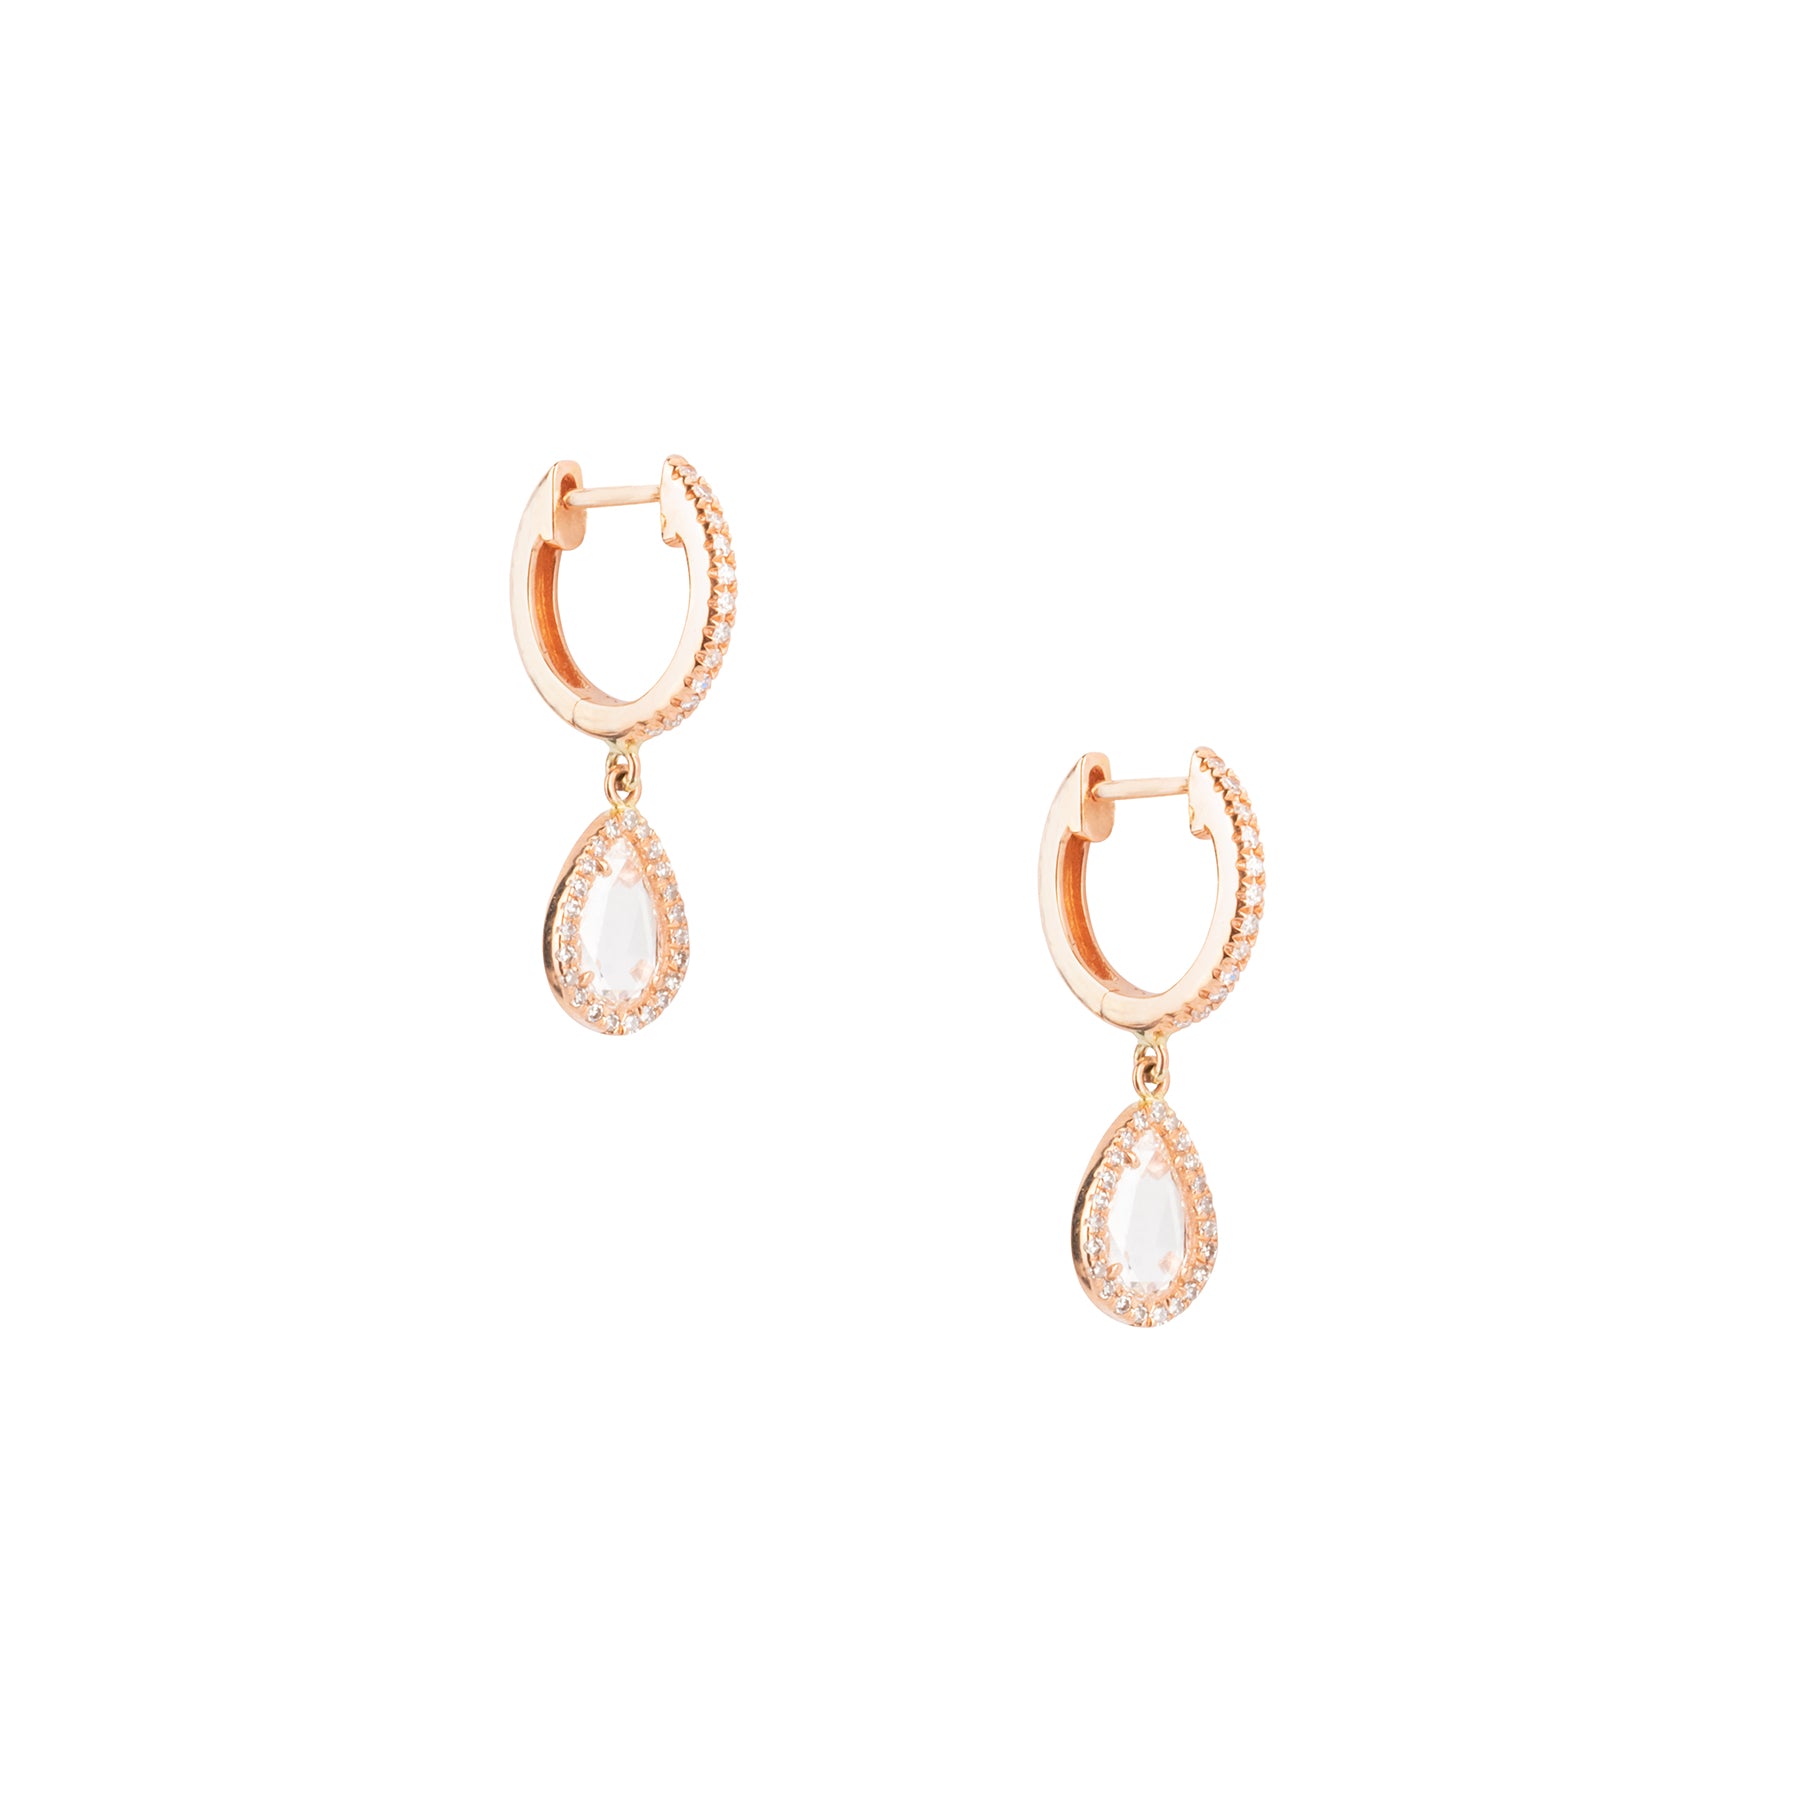 Tear Drop Rose Cut Diamond Dangle Earrings - Nina Segal Jewelry